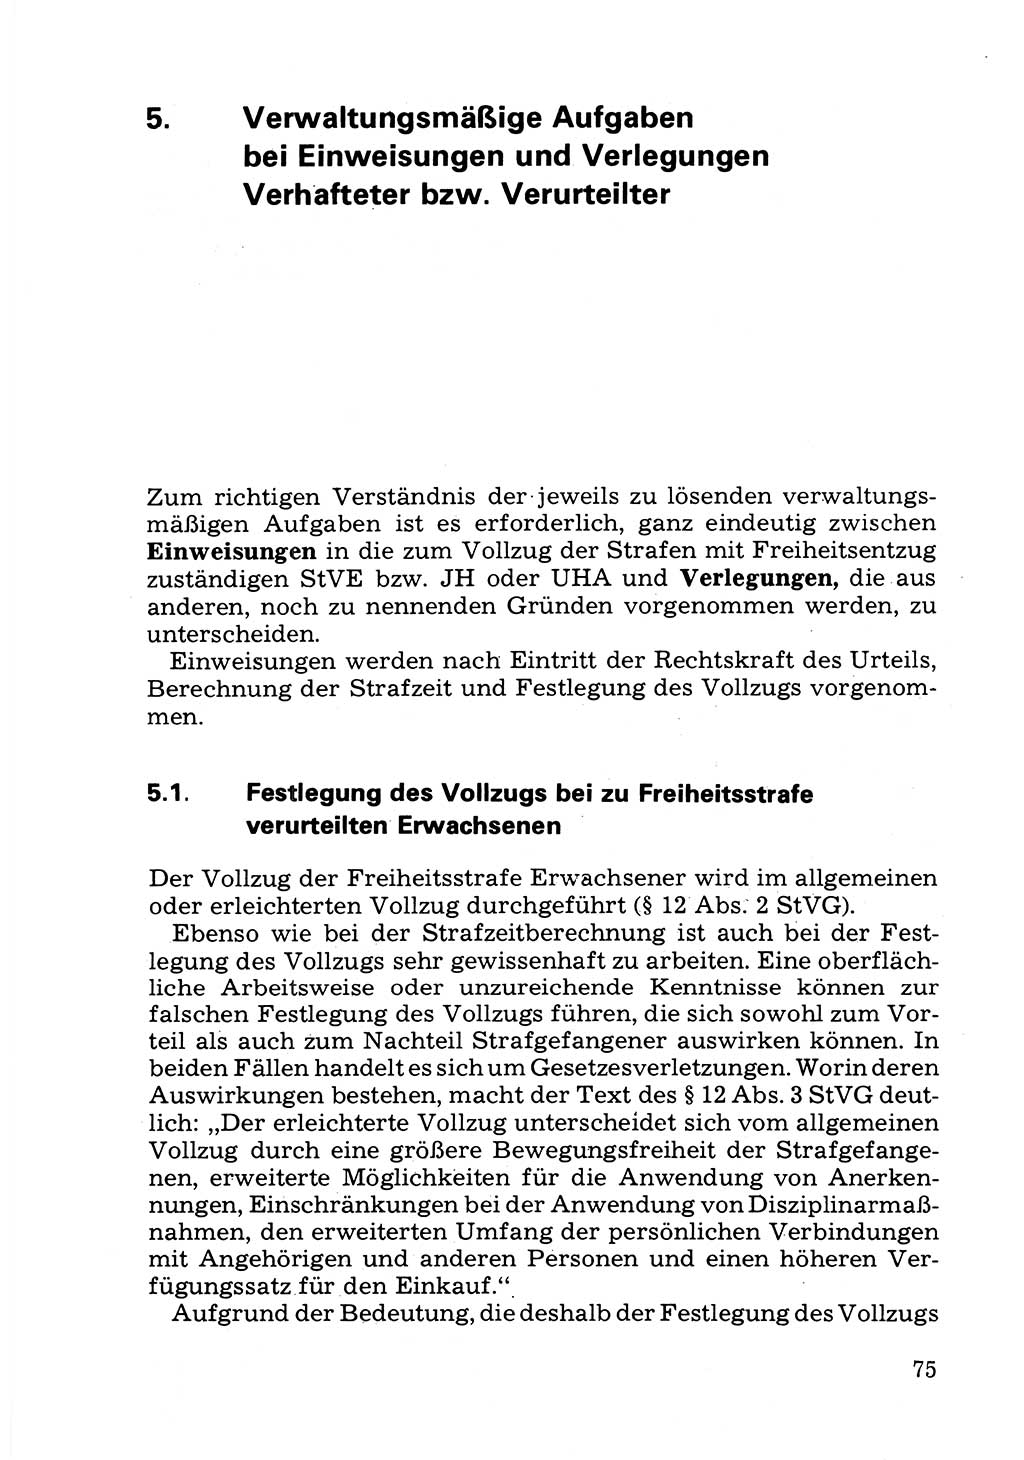 Verwaltungsmäßige Aufgaben beim Vollzug der Untersuchungshaft (U-Haft) sowie der Strafen mit Freiheitsentzug (SV) [Deutsche Demokratische Republik (DDR)] 1980, Seite 75 (Aufg. Vollz. U-Haft SV DDR 1980, S. 75)